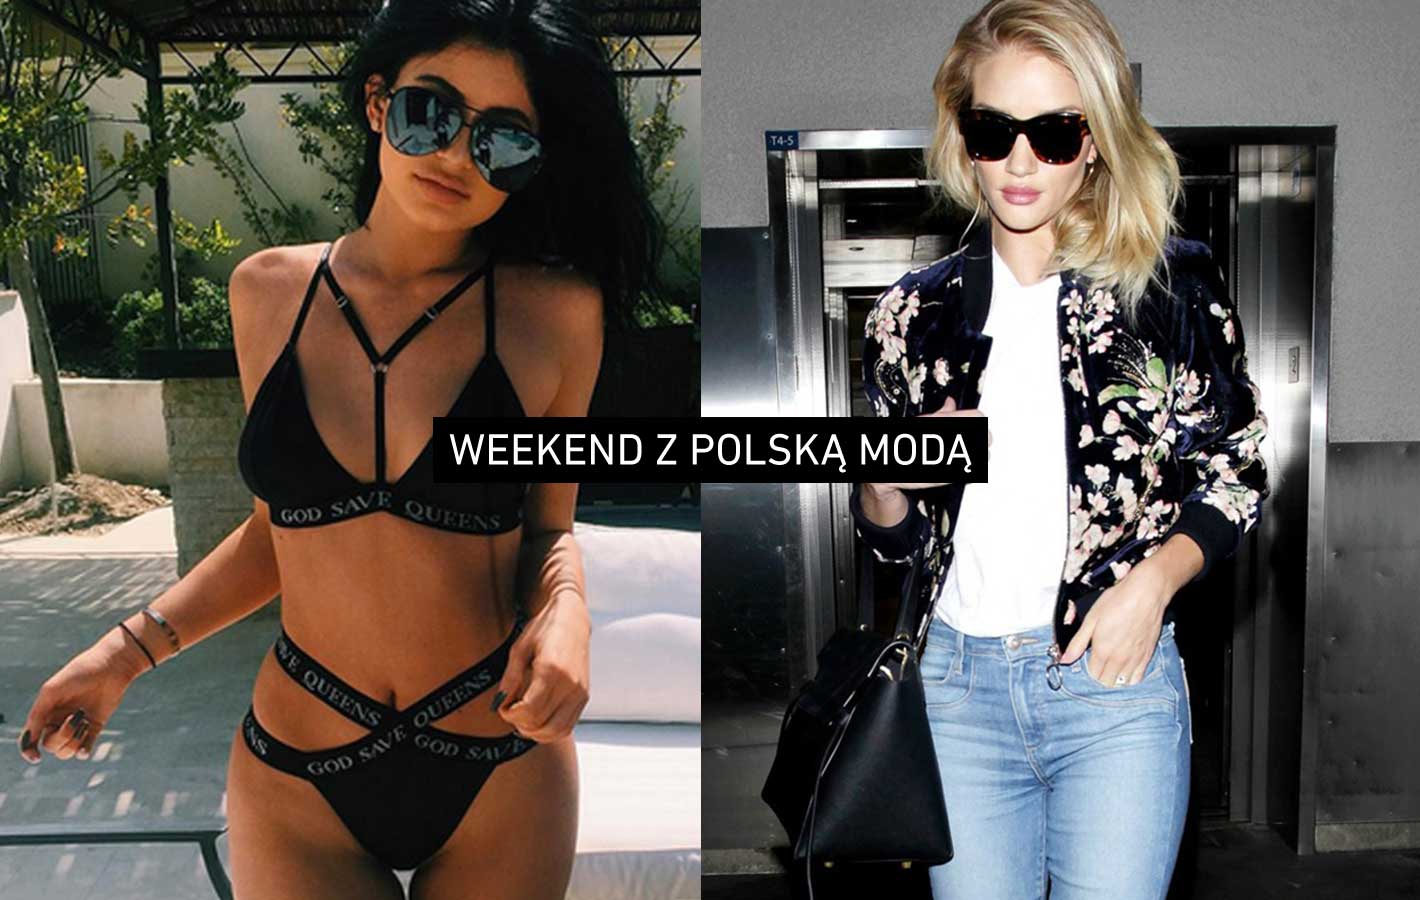 Weekend z polską modą: światowe gwiazdy w ubraniach polskich marek